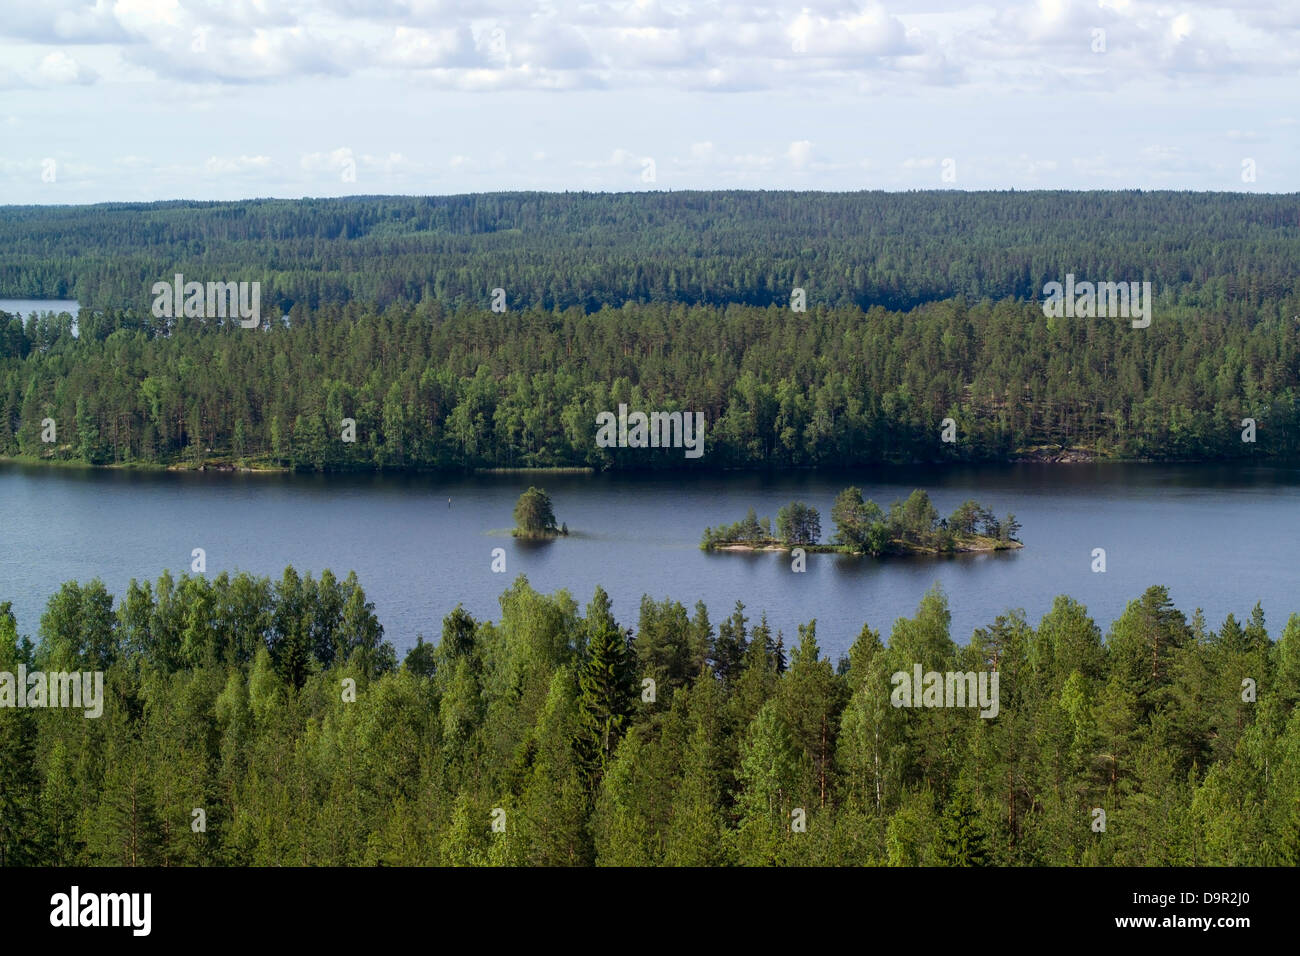 Rural landscape in Suomenniemi, Finland Stock Photo